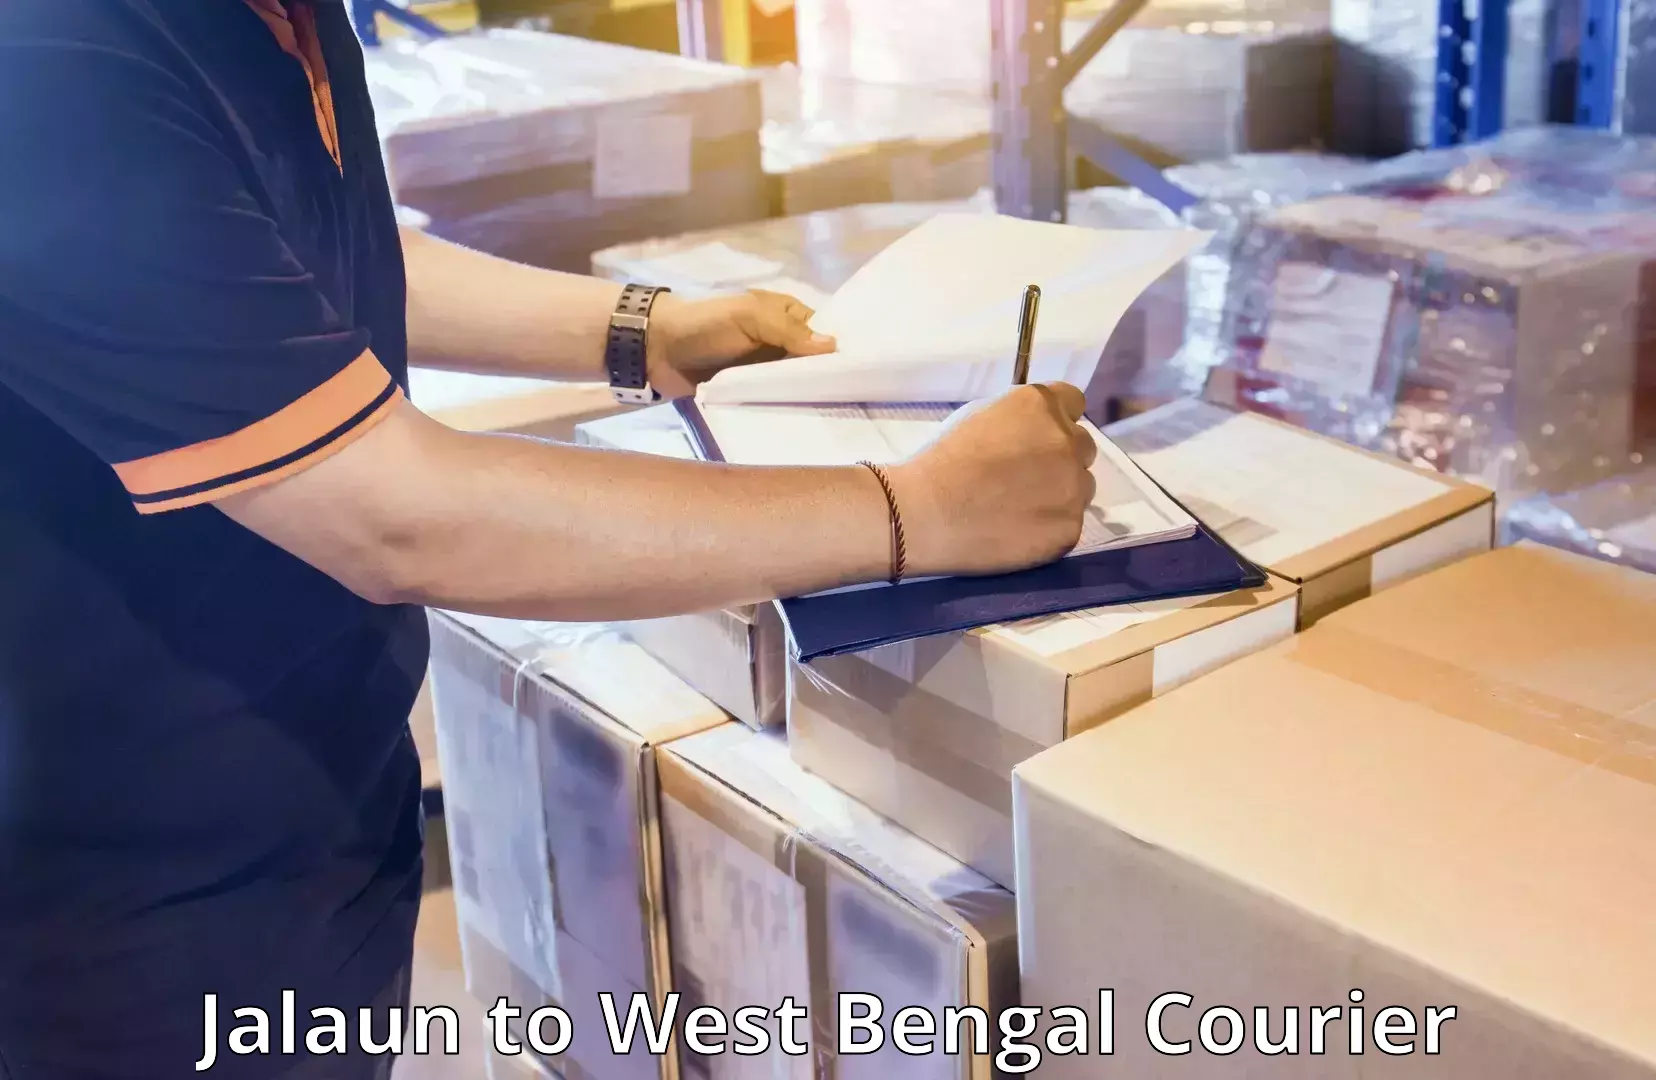 Urgent luggage shipment Jalaun to West Bengal